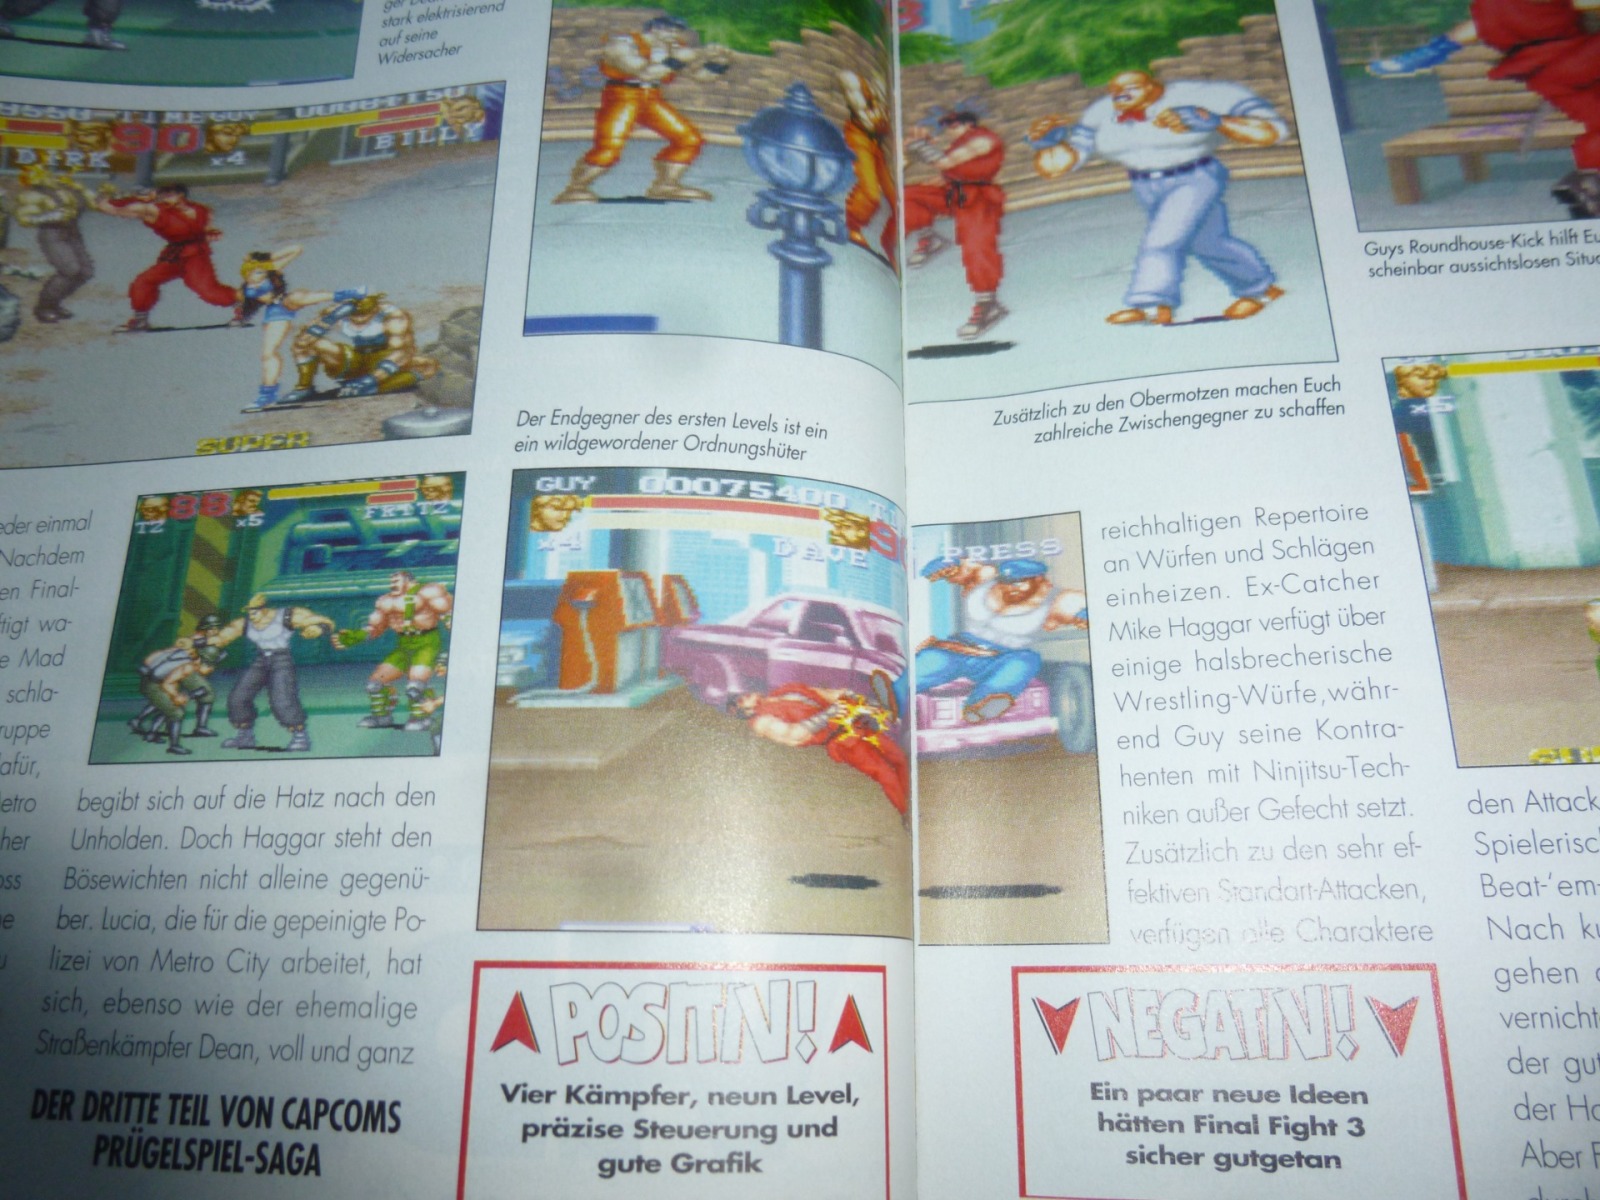 TOTAL Das unabhängige Magazin - 100% Nintendo - Ausgabe 4/96 1996 10